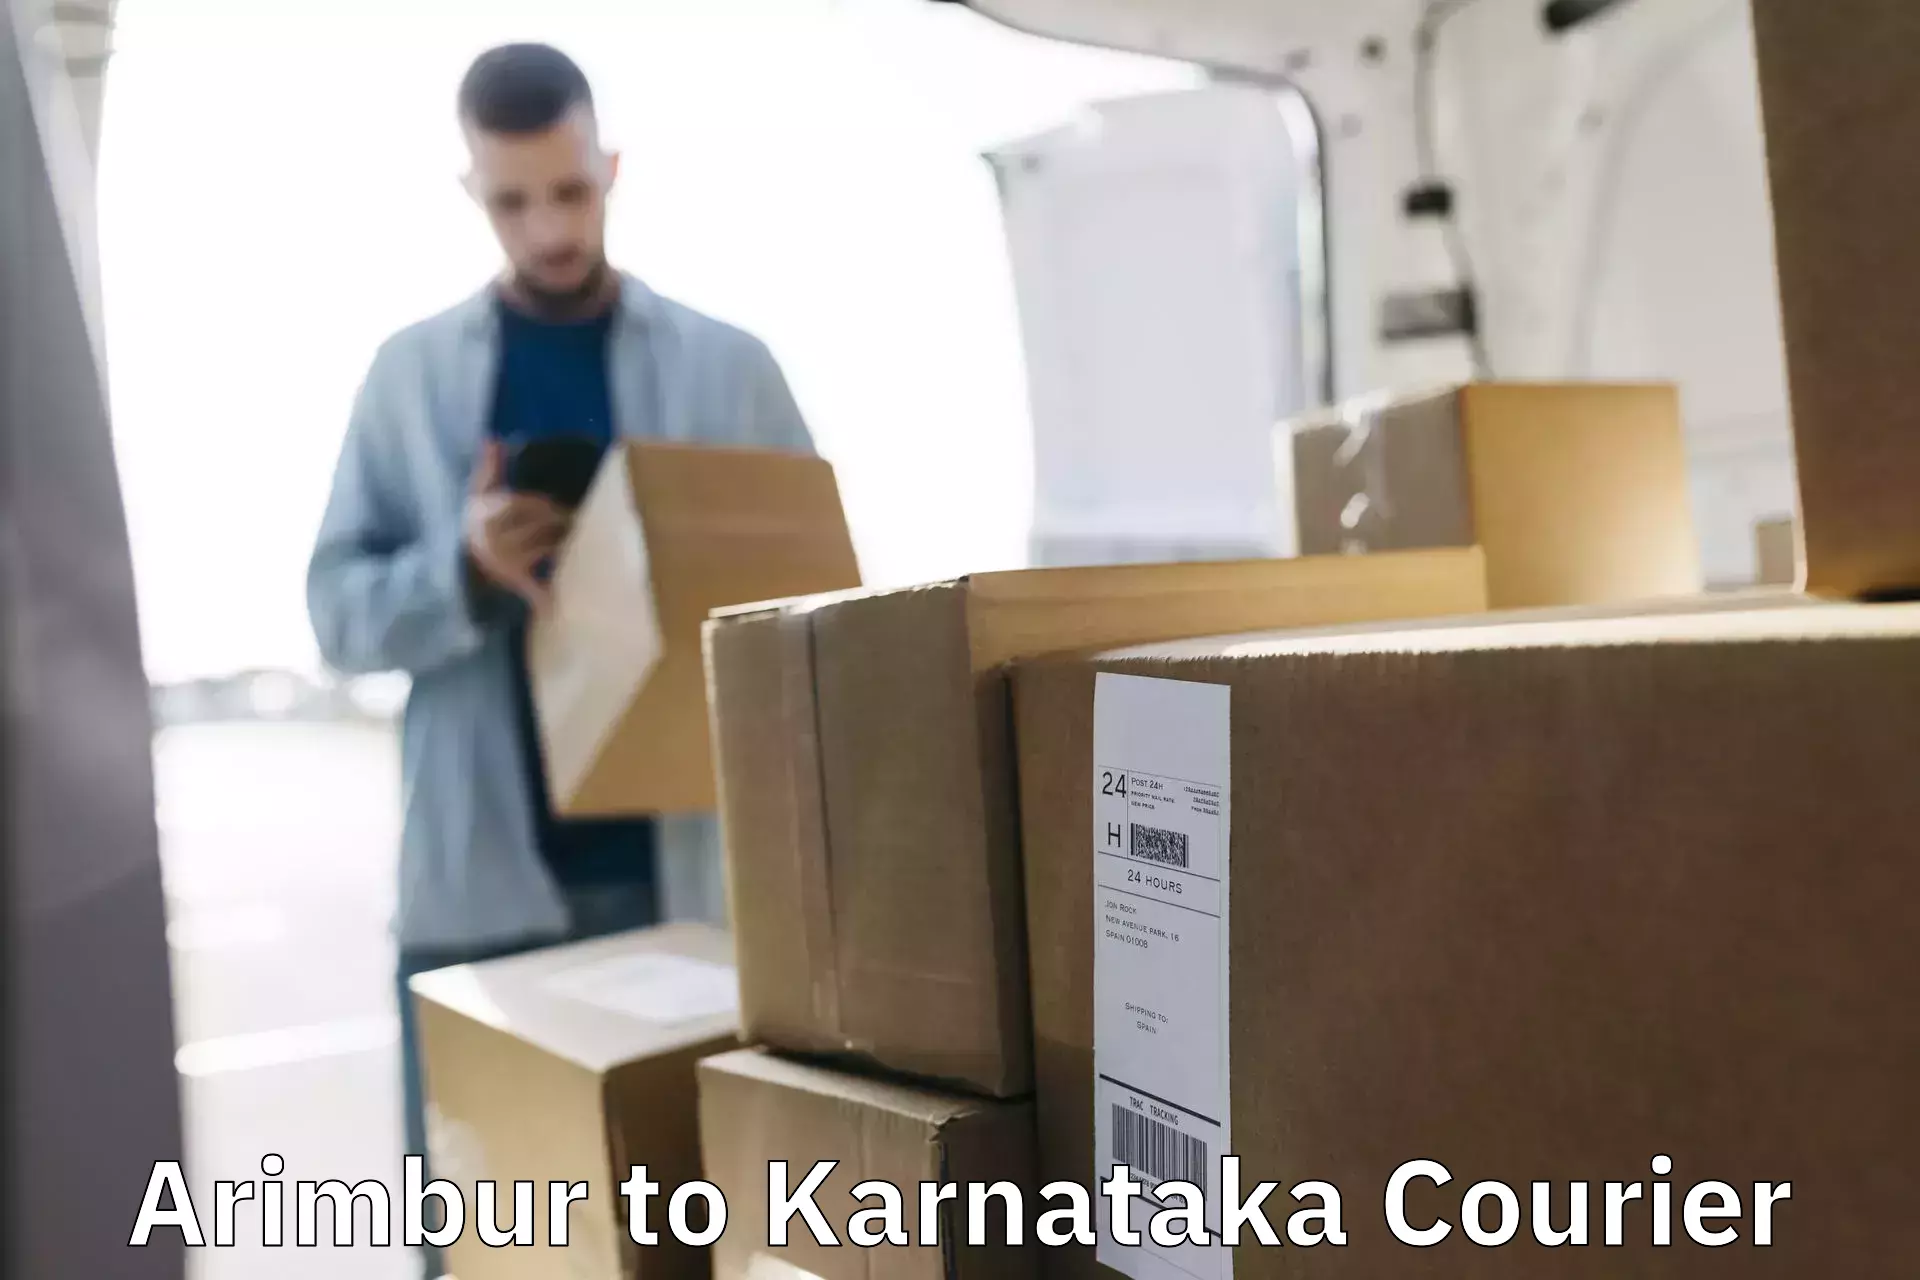 Custom courier packaging Arimbur to Karnataka